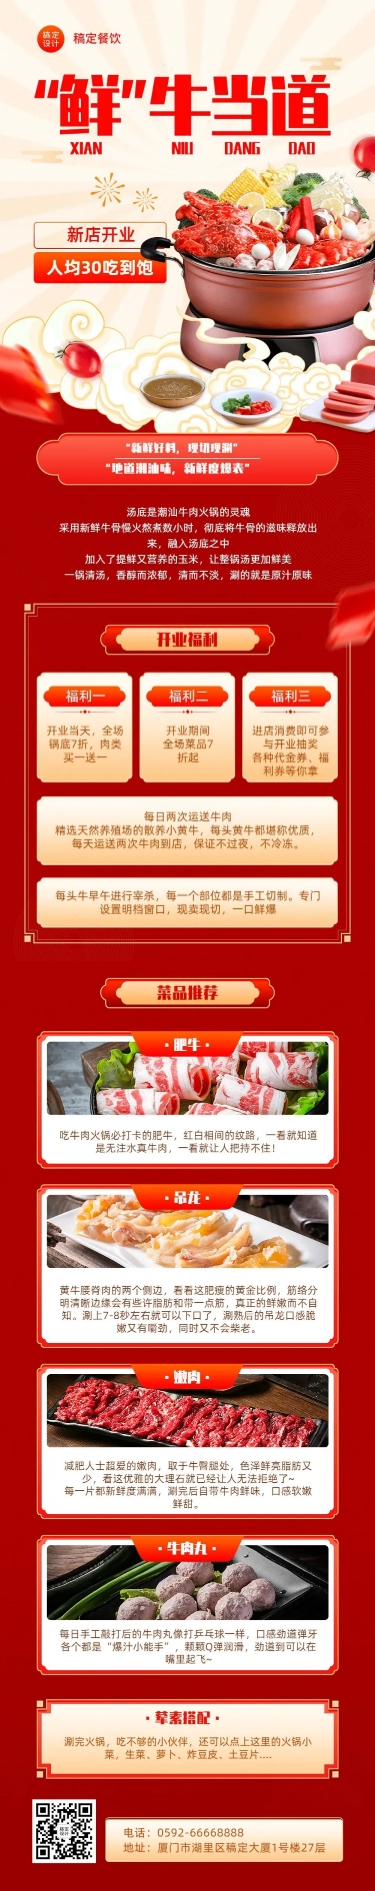 餐饮美食火锅店新店开业宣传文章长图